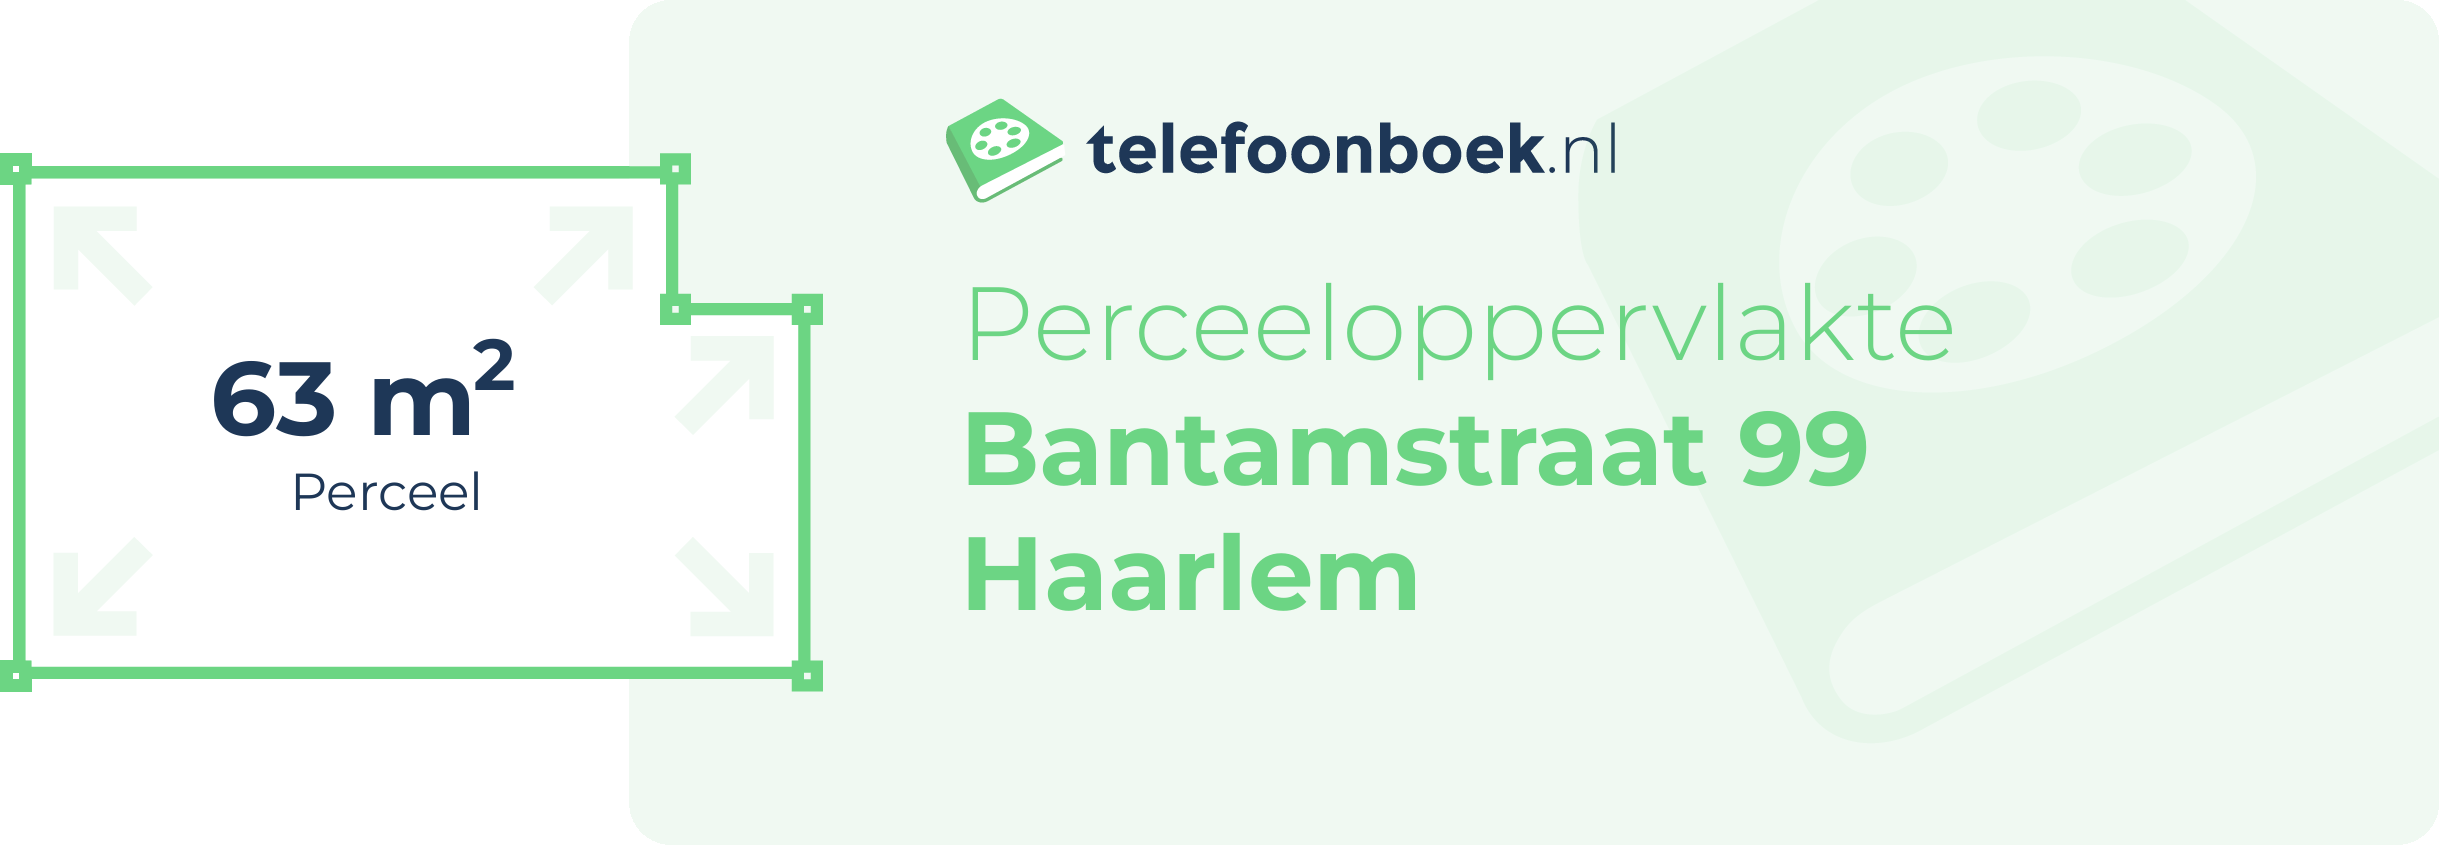 Perceeloppervlakte Bantamstraat 99 Haarlem